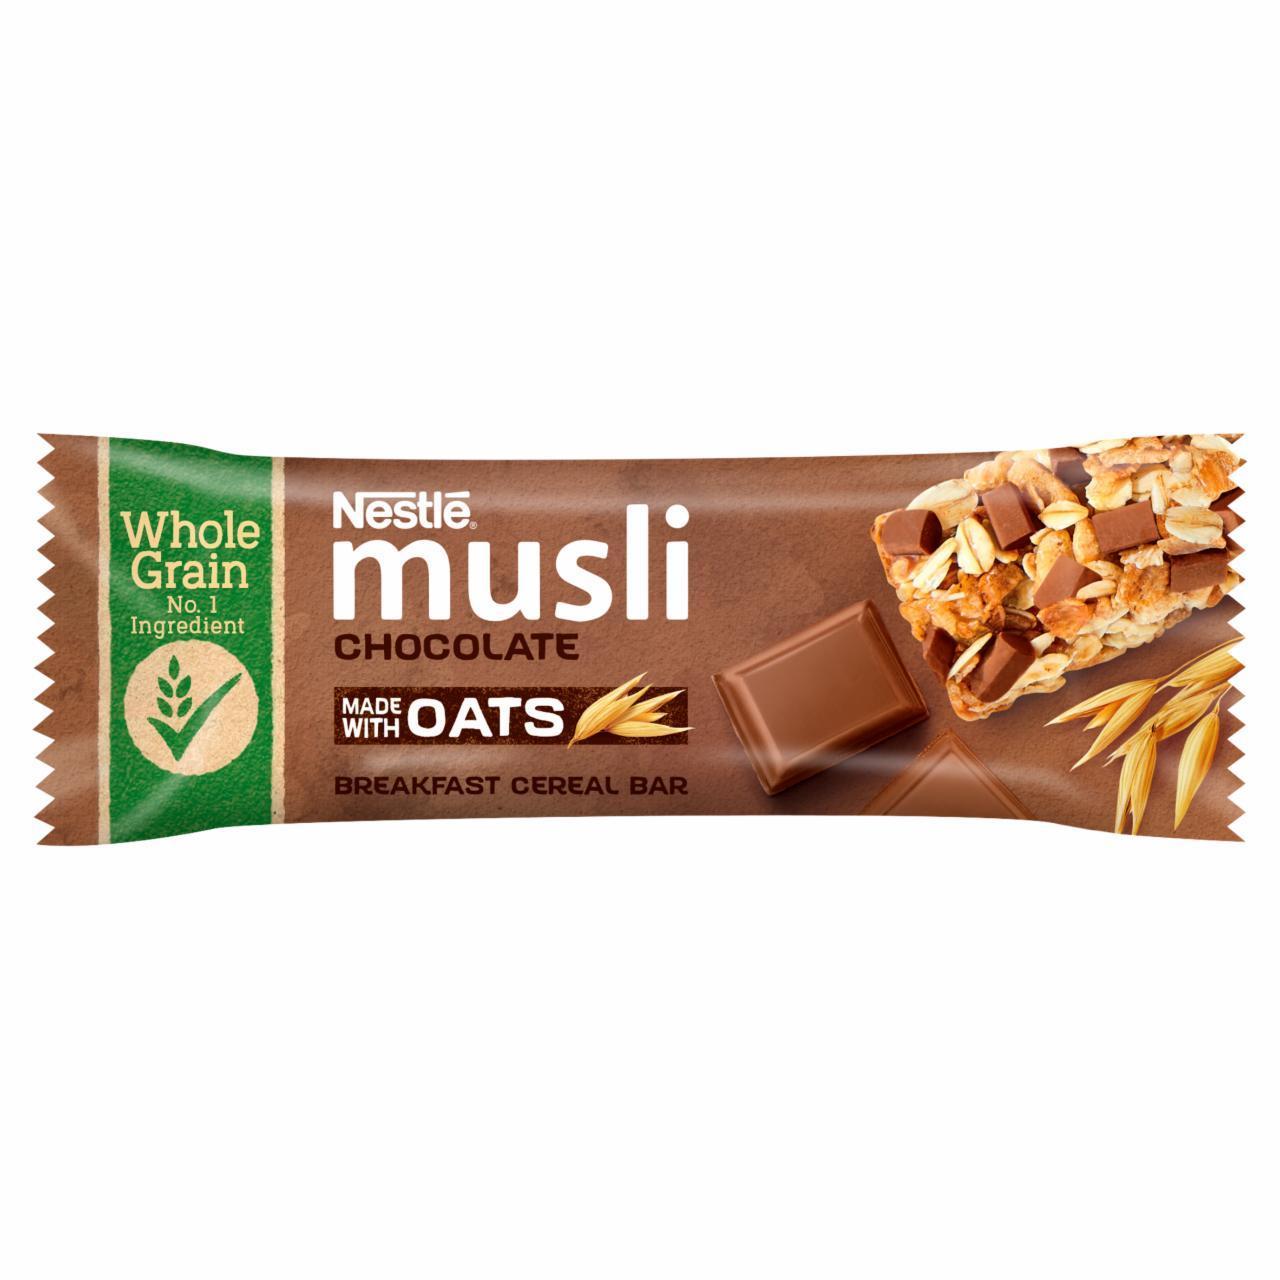 Zdjęcia - Nestlé Musli Batonik zbożowy z mleczną czekoladą 35 g